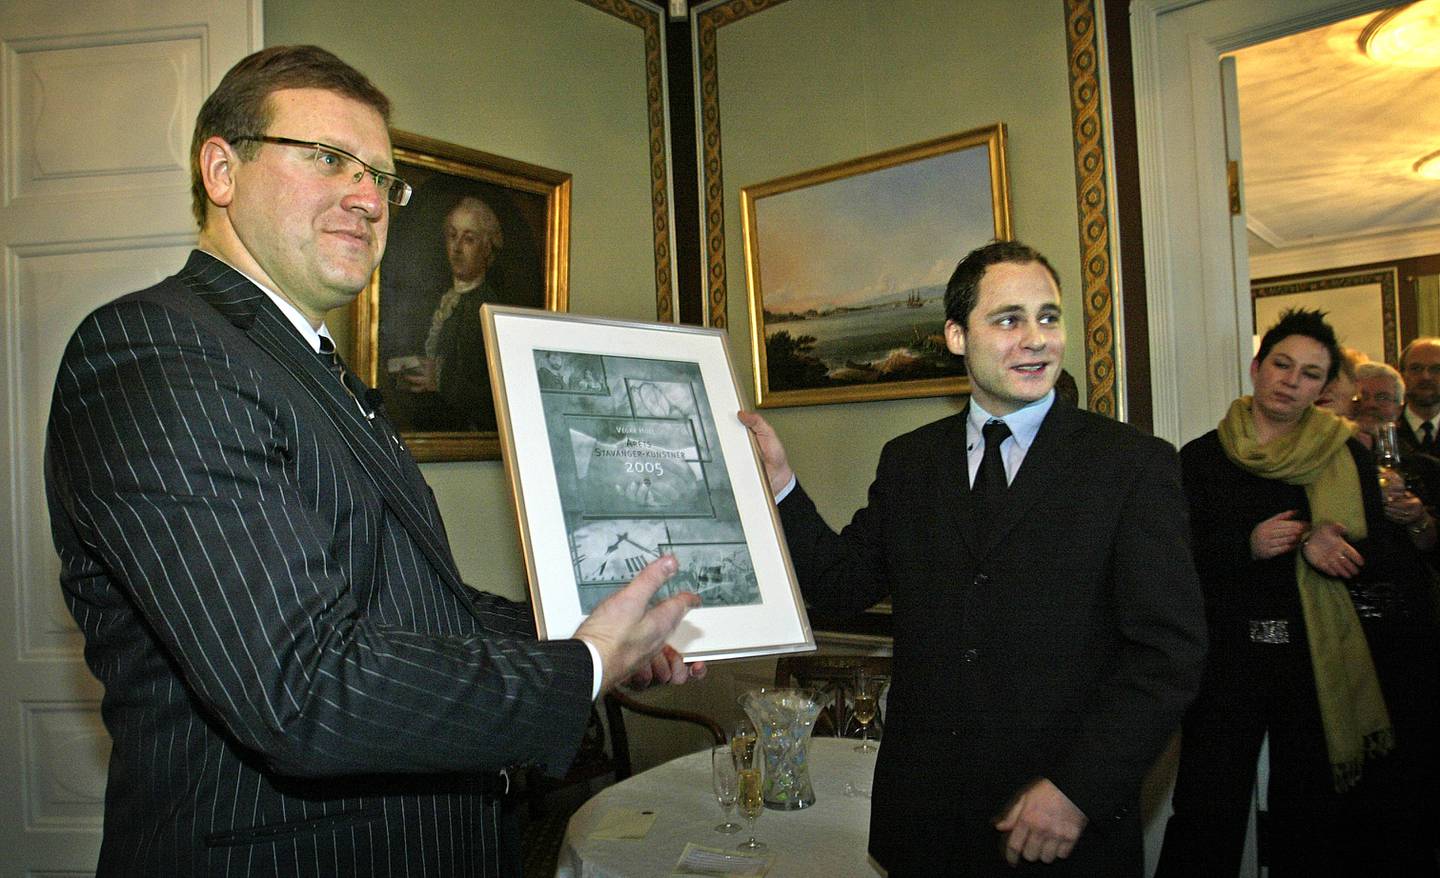 Vegar Hoel ble kåret til årets stavangerkunstner i 2005. Her får han heder av ordfører Leif Johan Sevland under nyttårsmottakelsen på Ledaal.